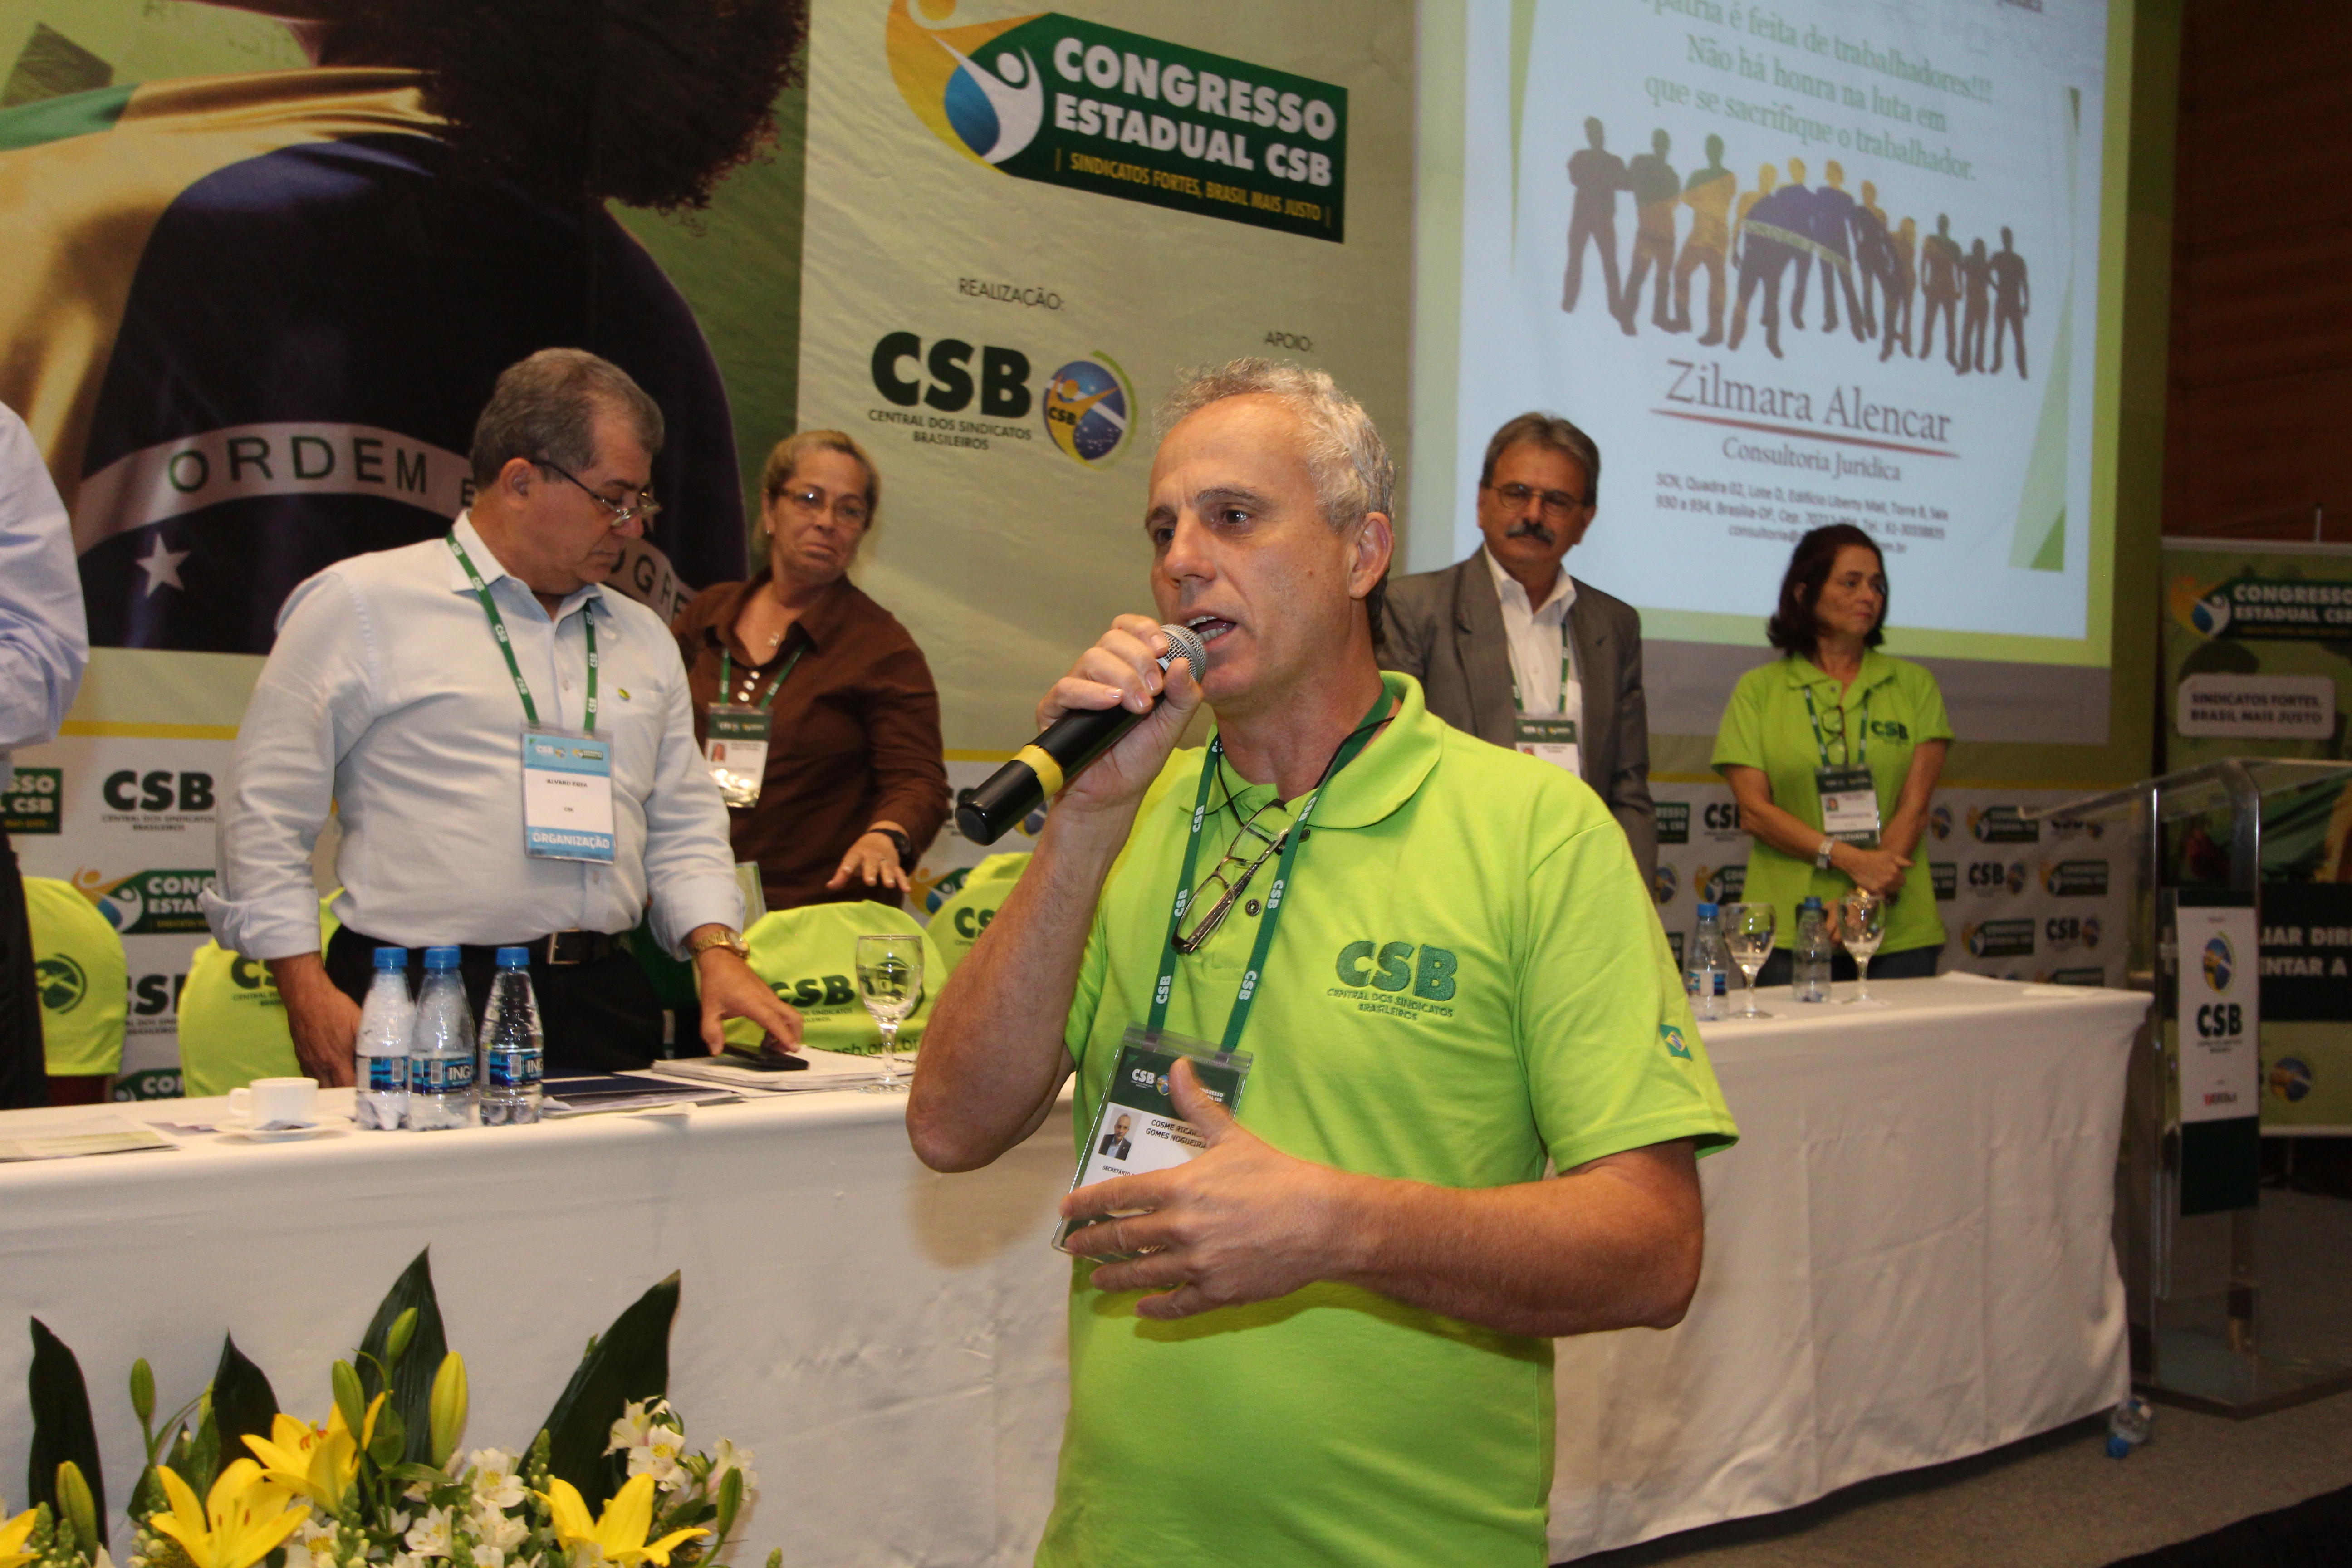 “A CSB tem um trabalho consolidado em todas as regiões de Minas Gerais, seja na capital ou no interior”, diz Cosme Nogueira